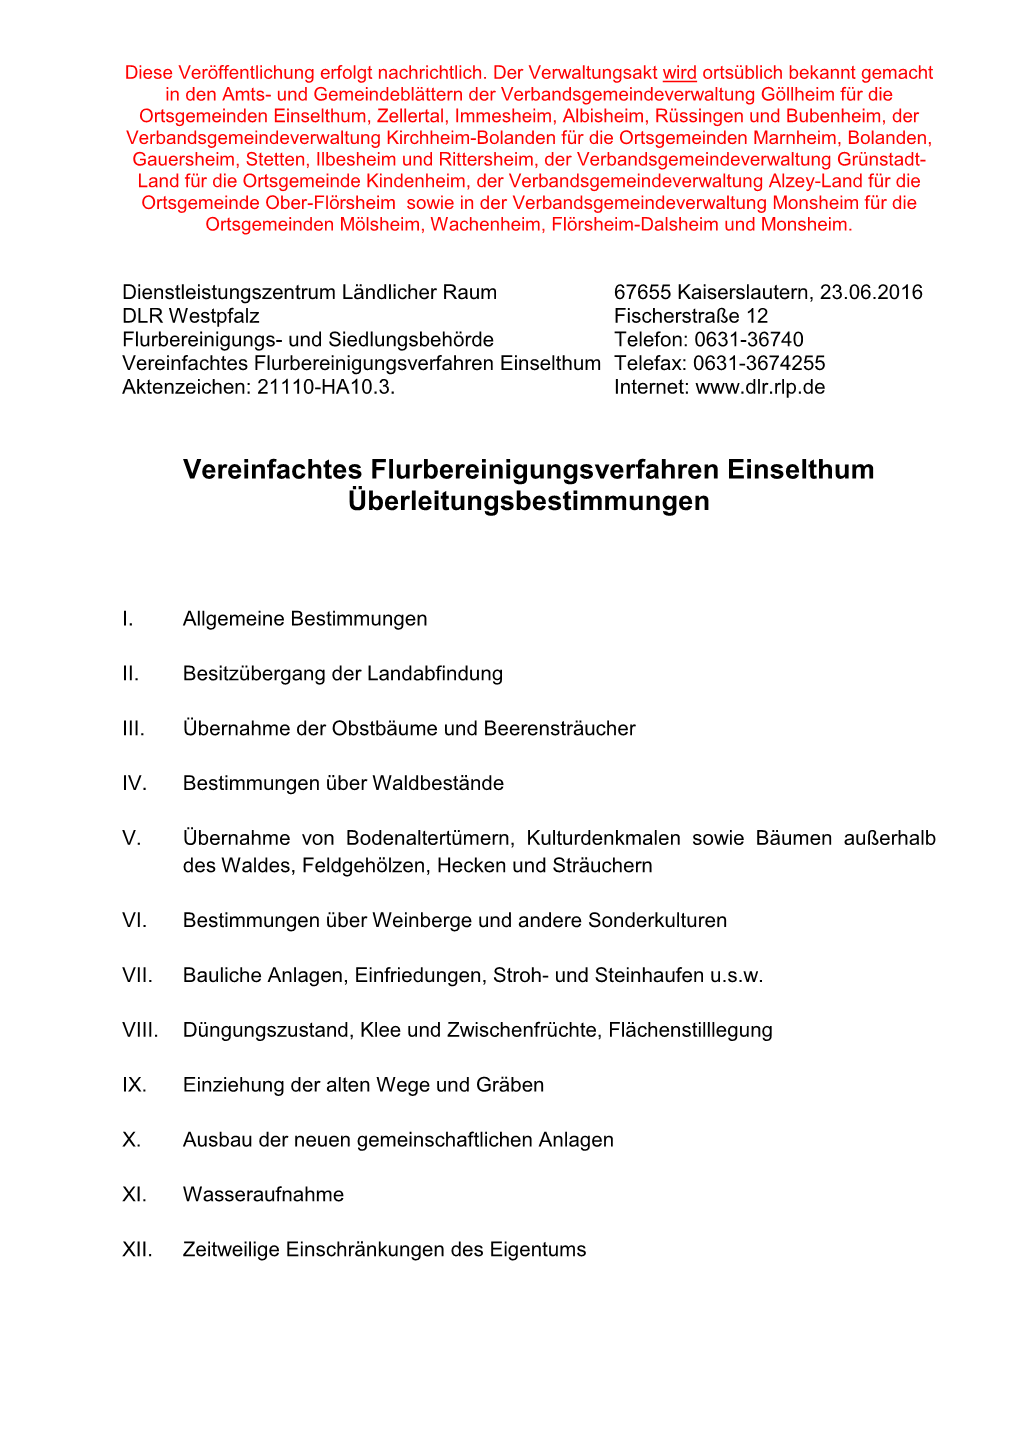 Vereinfachtes Flurbereinigungsverfahren Einselthum Telefax: 0631-3674255 Aktenzeichen: 21110-HA10.3